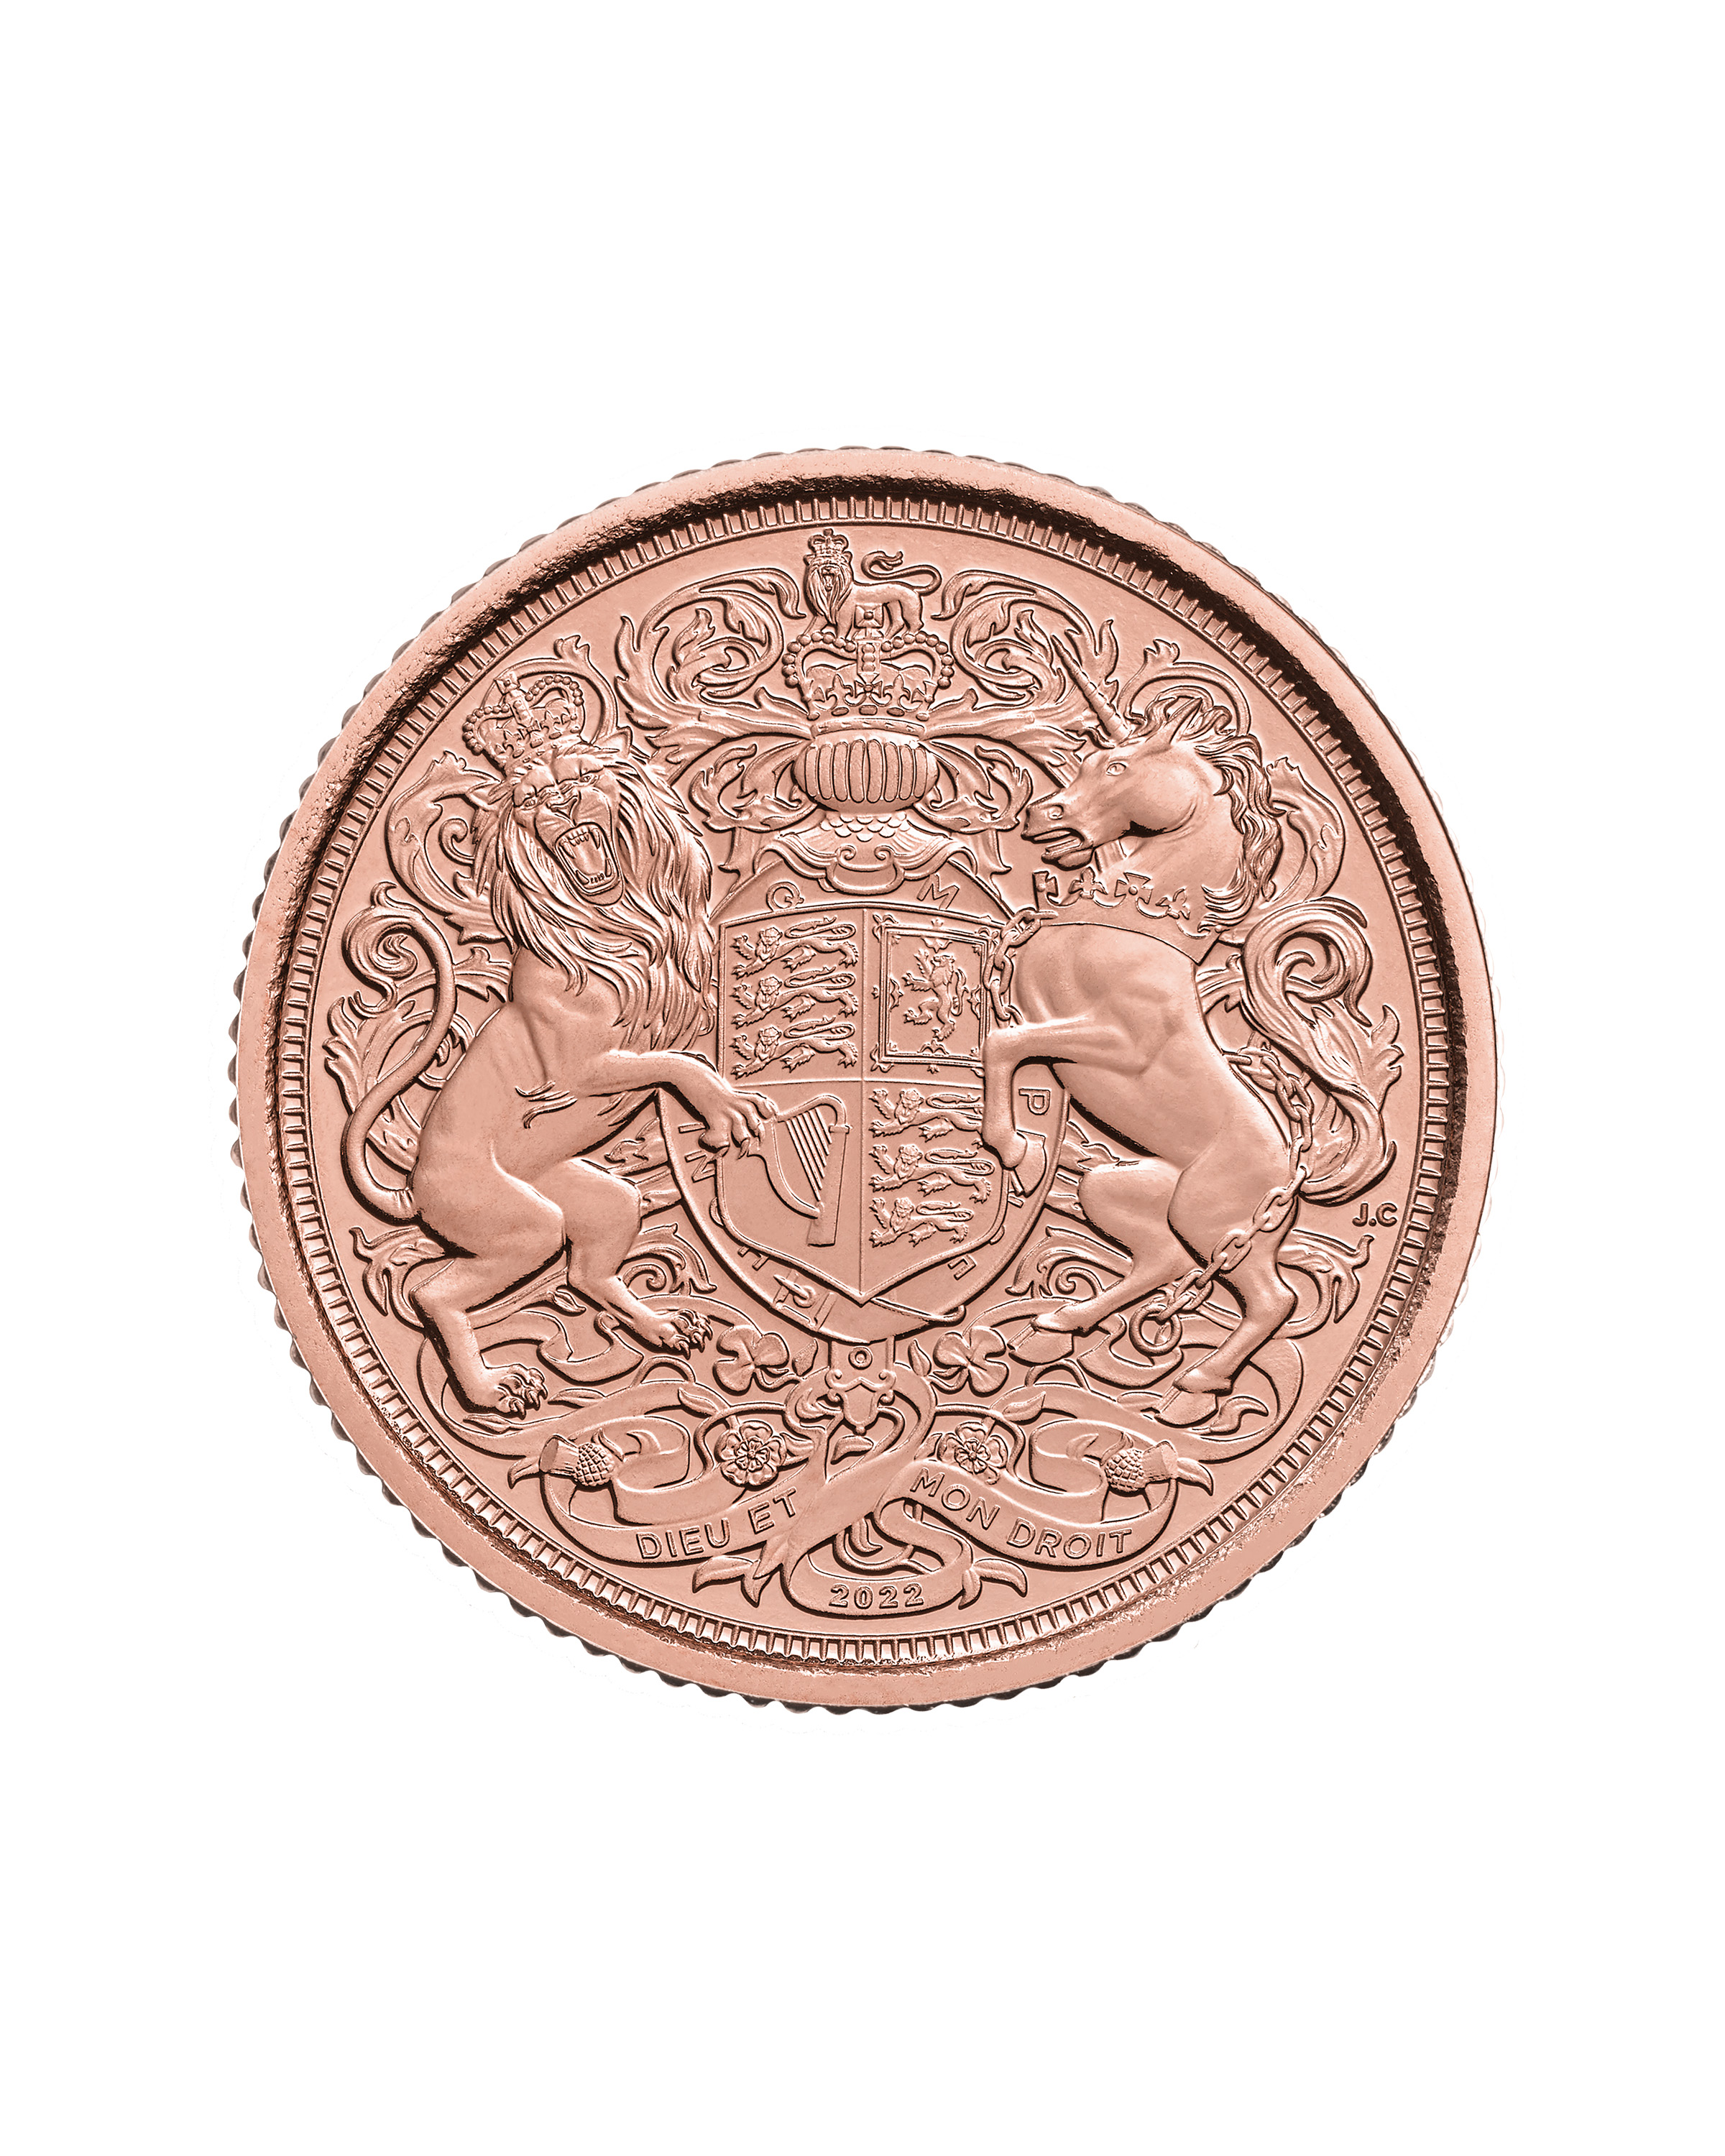 2022 Memorial Half Sovereign Gold Coin